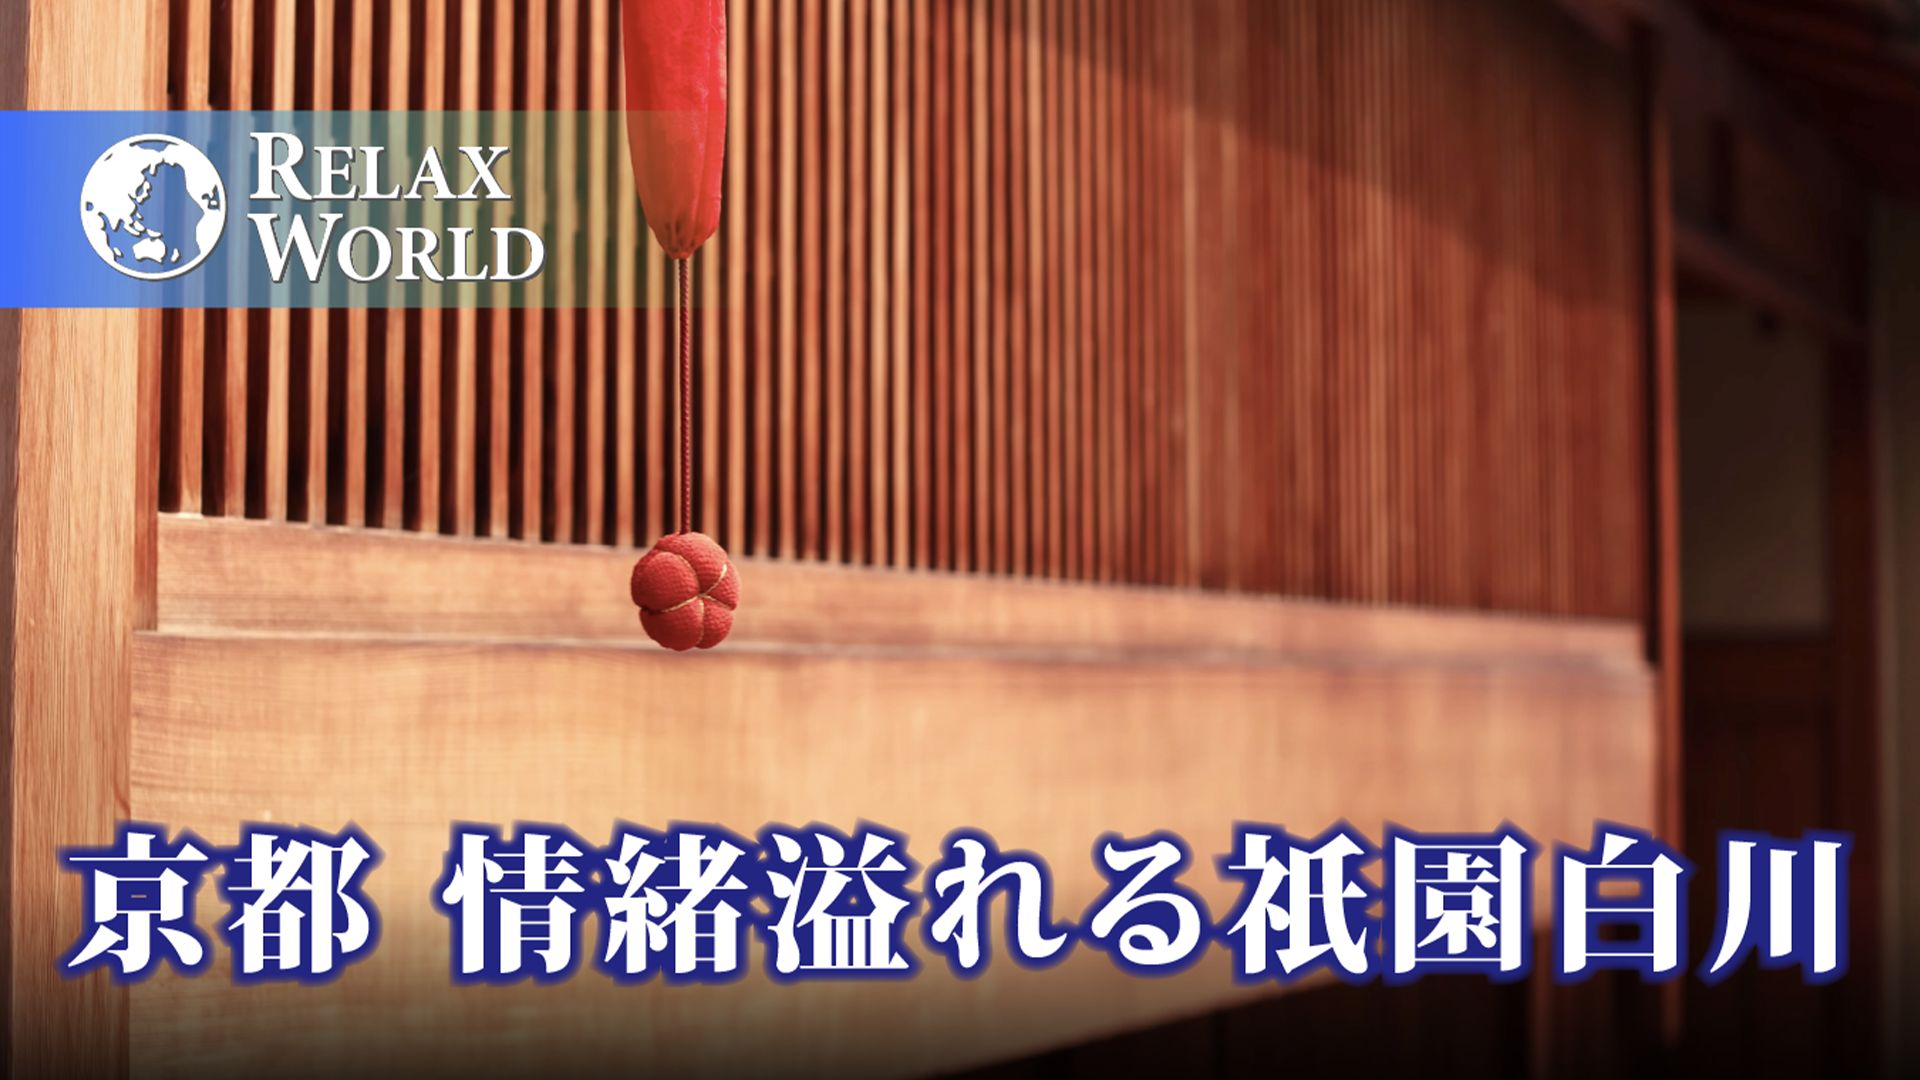 京都 情緒溢れる祇園白川【RELAX WORLD】